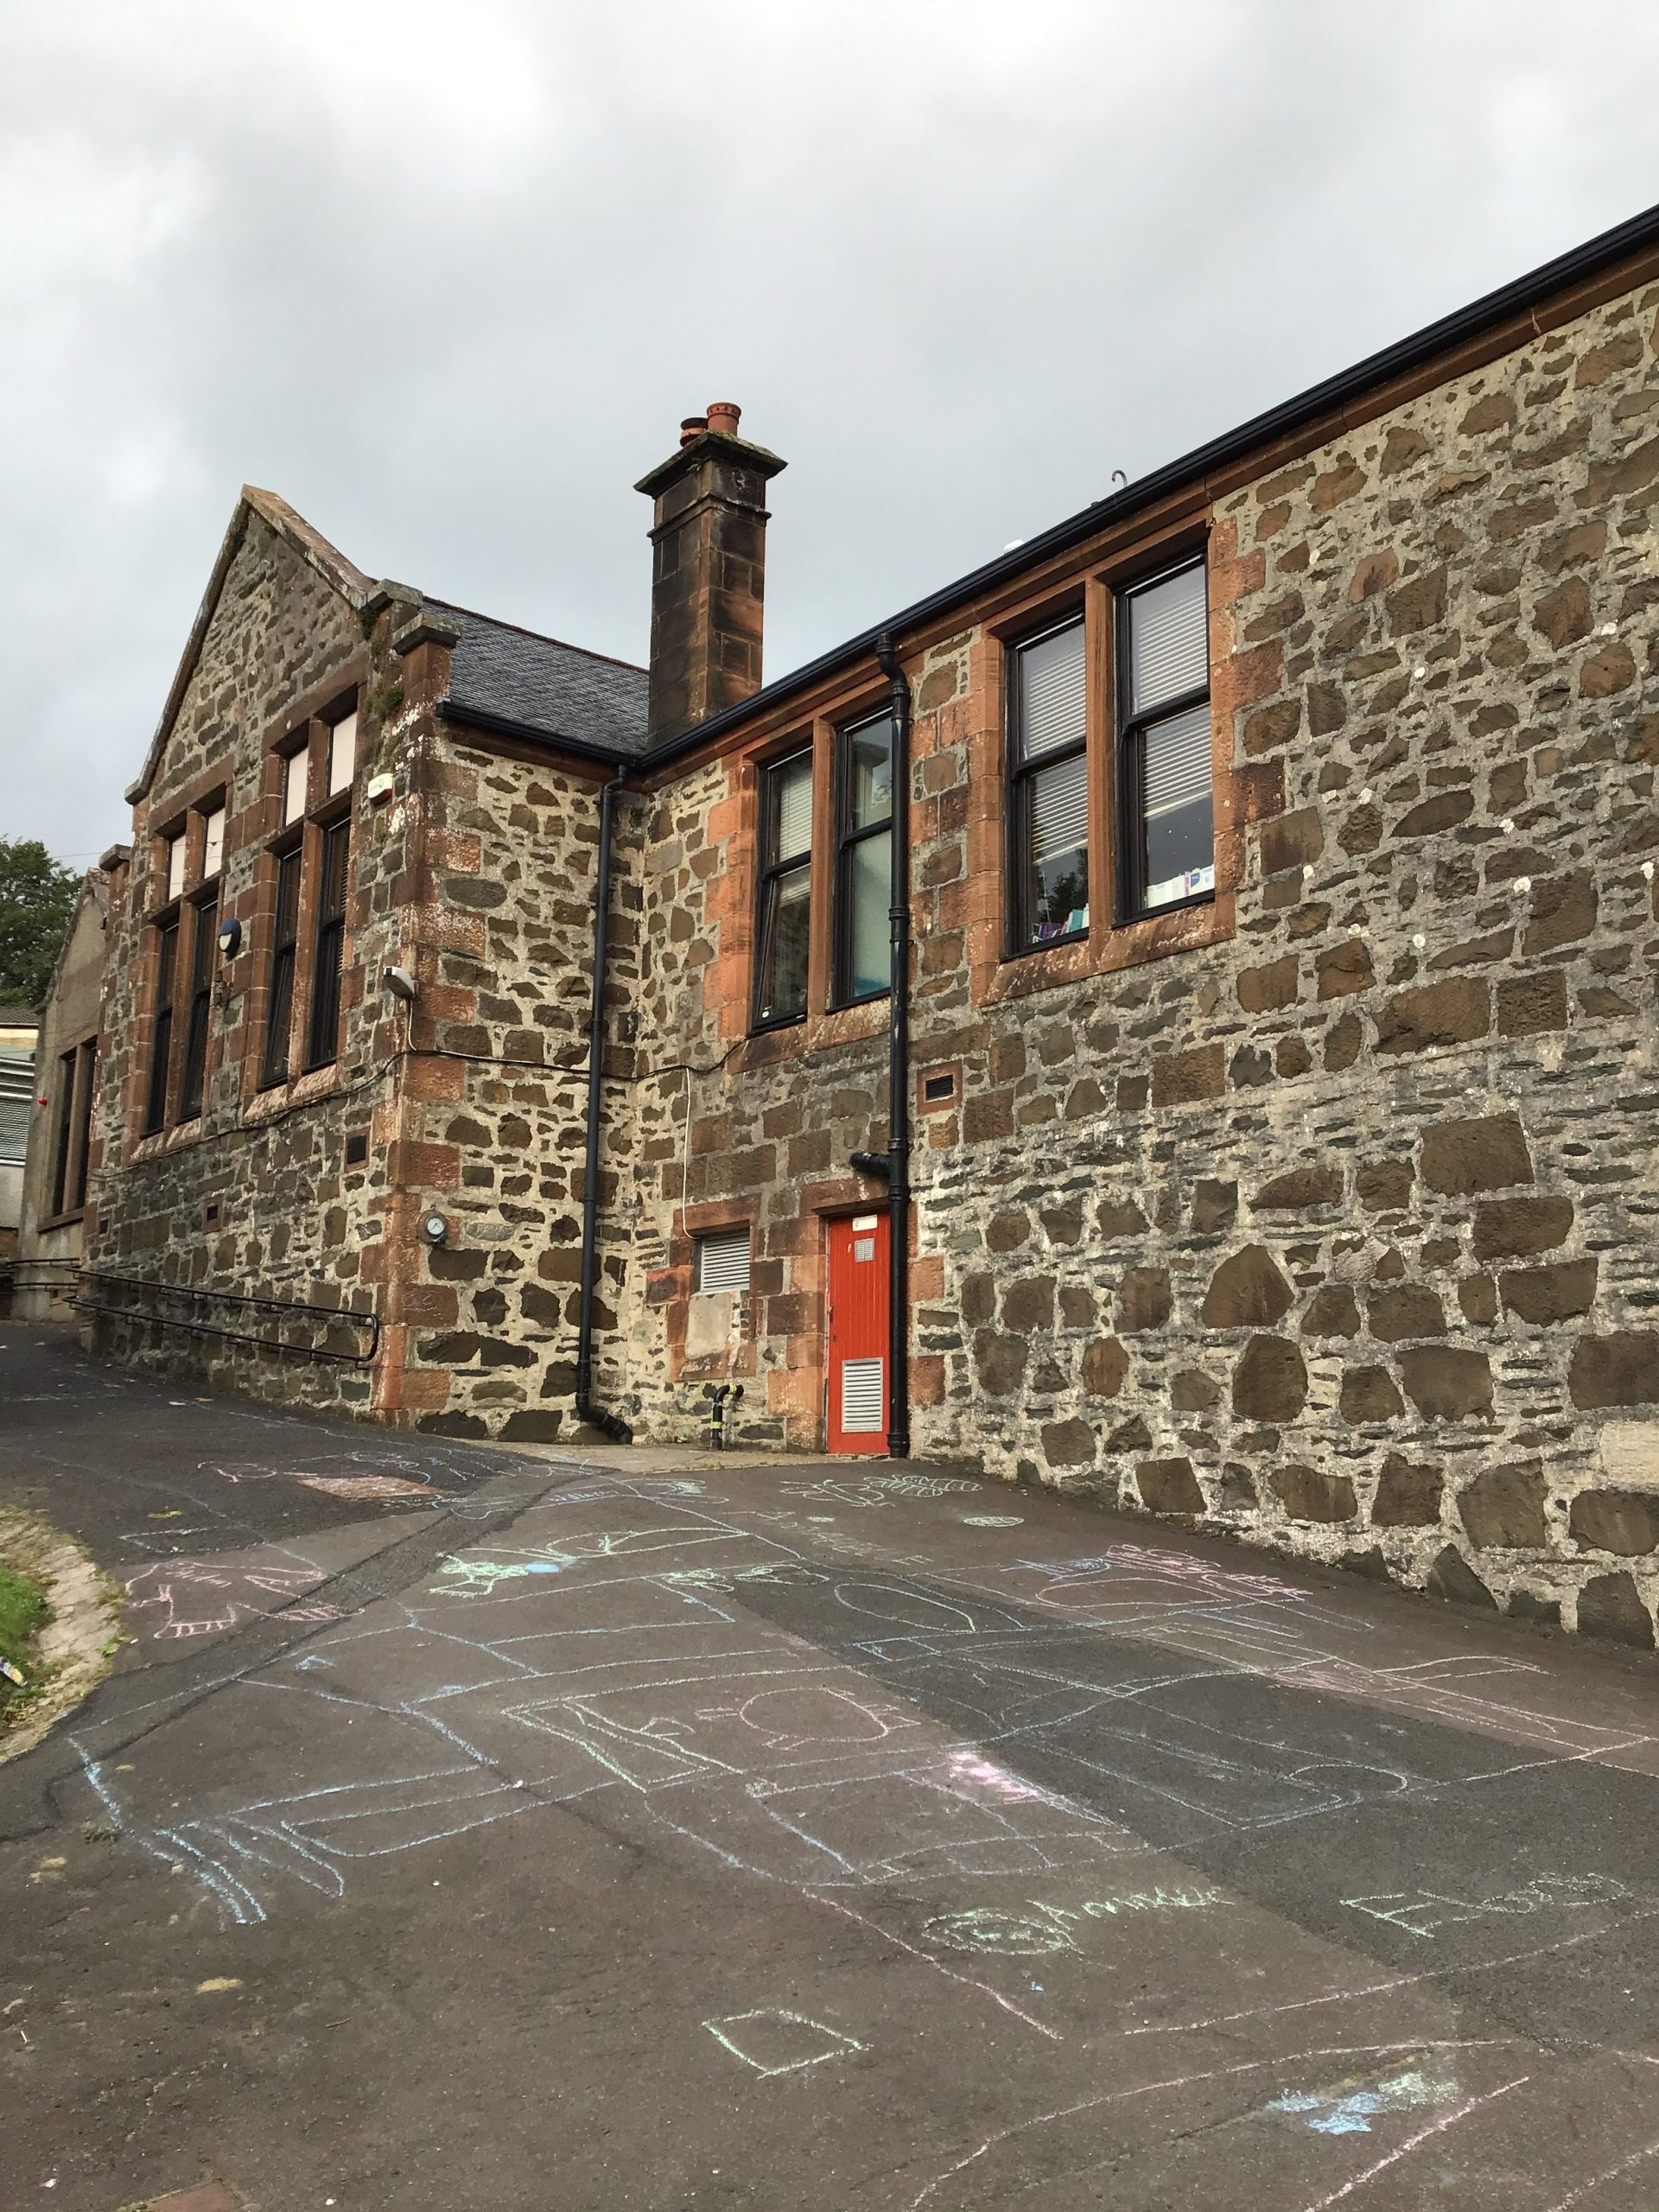 St Andrew's Primary School